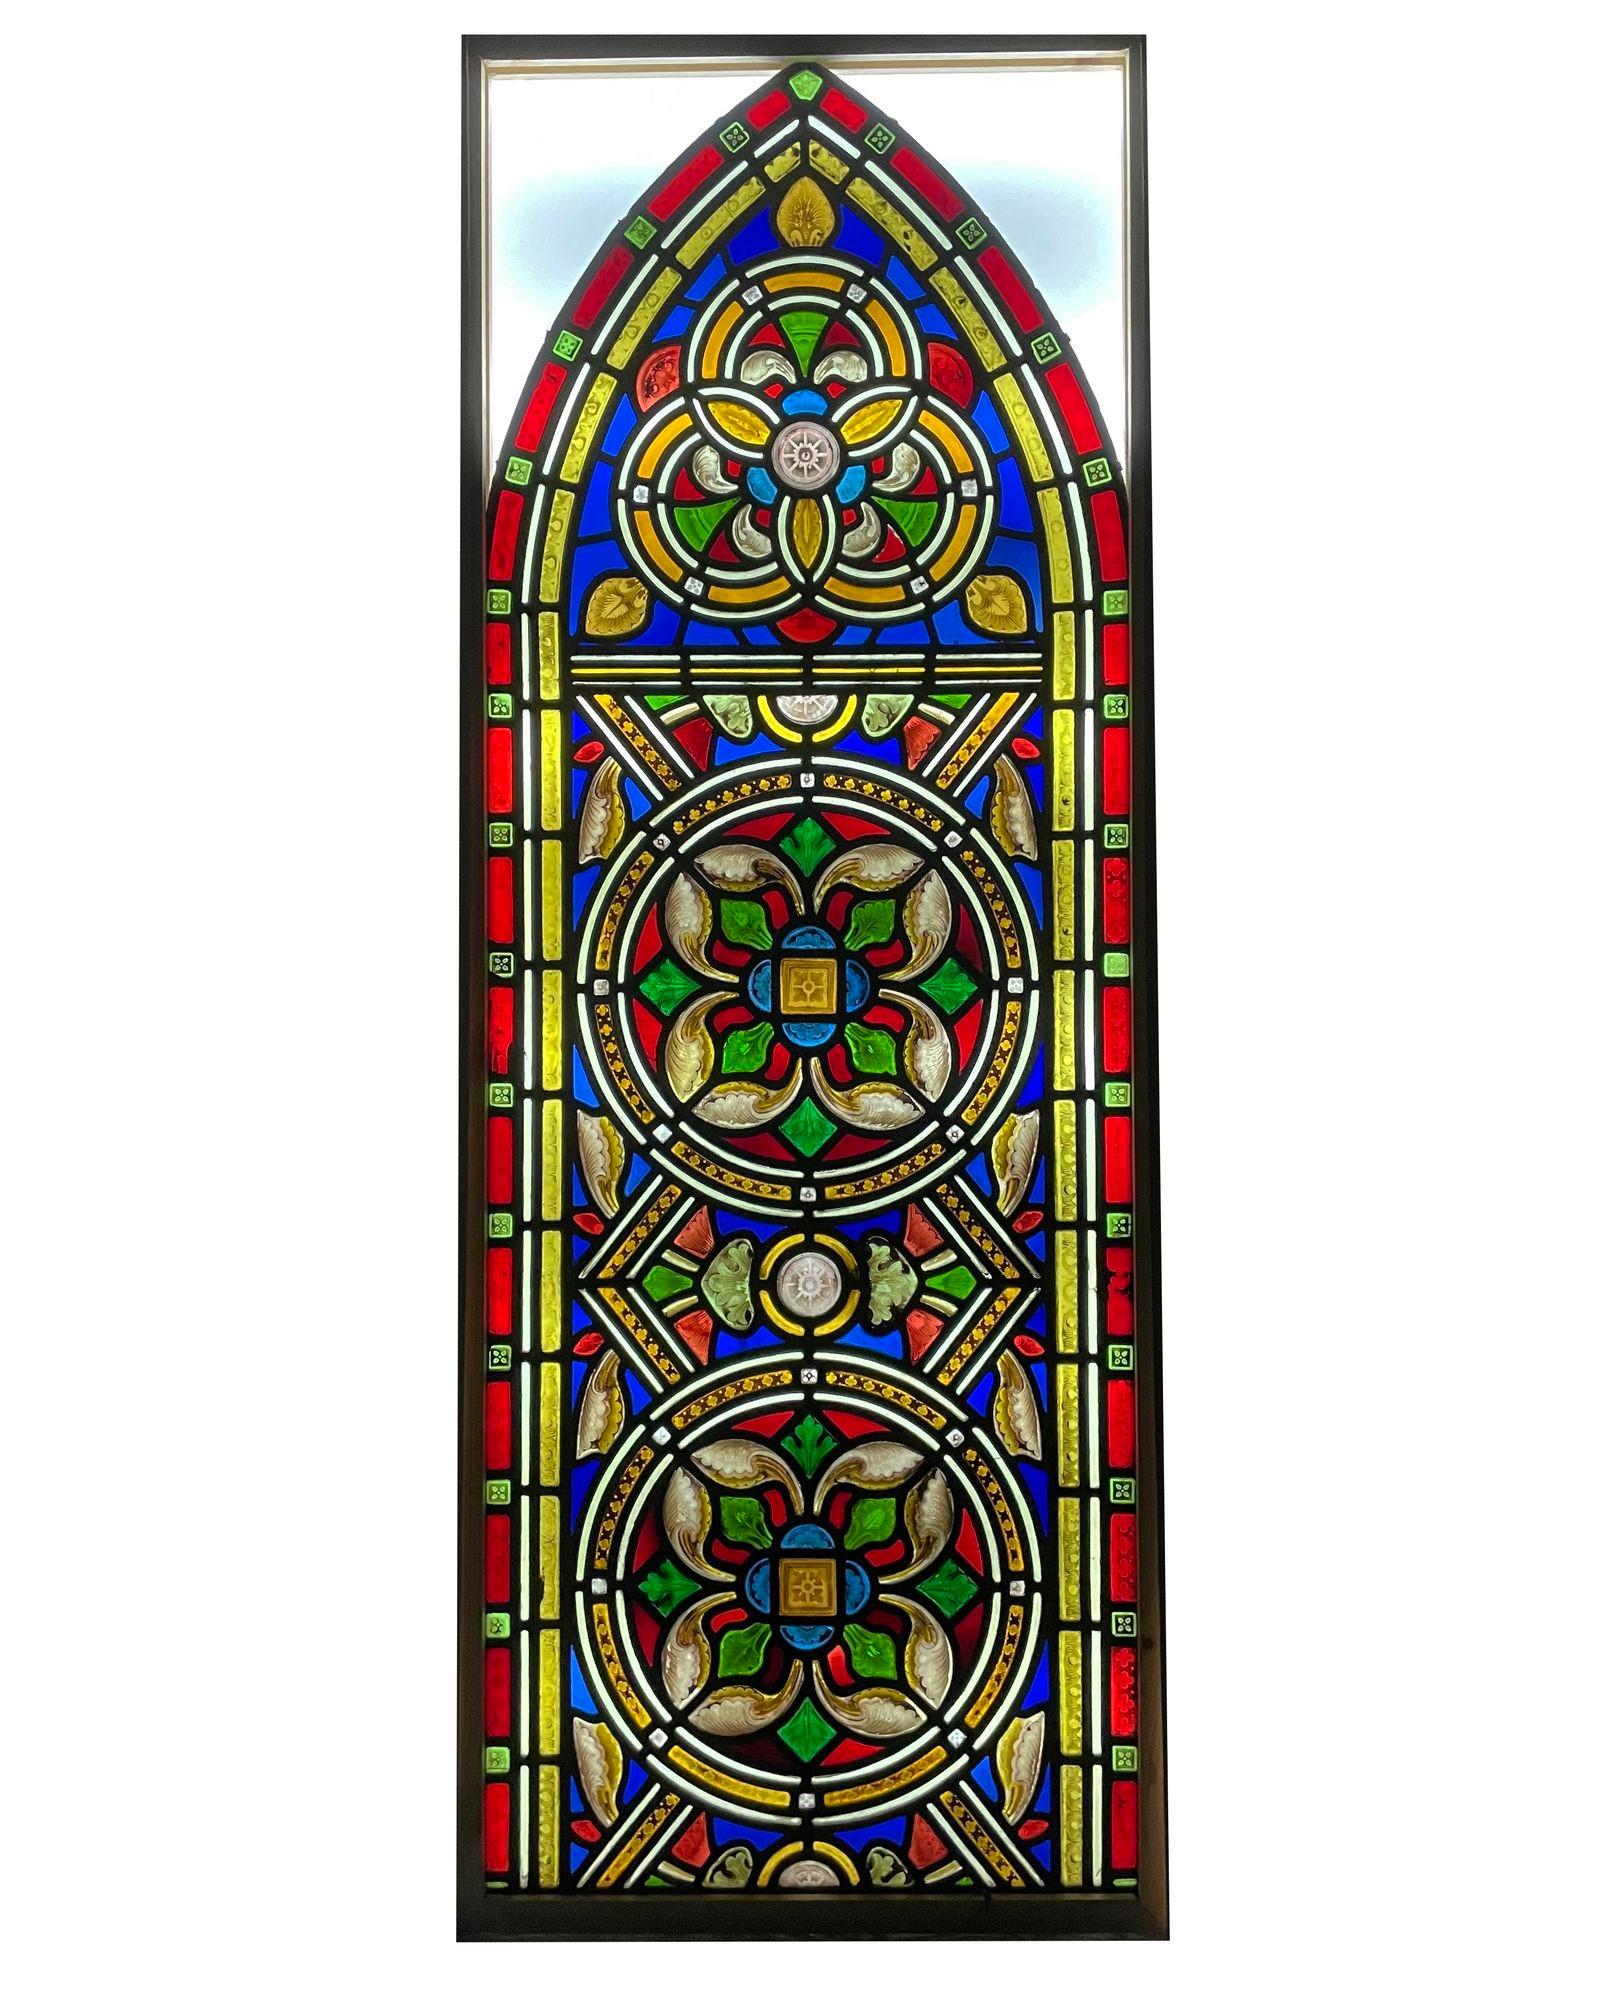 Ein antikes viktorianisches gewölbtes Glasfenster mit einer stilisierten Tudor-Rose, das ursprünglich aus einer Kirche in Nordengland stammt.

Drei handgemalte, detaillierte Blumen bilden das Herzstück dieses Stücks. Es enthält sowohl kirchliche als